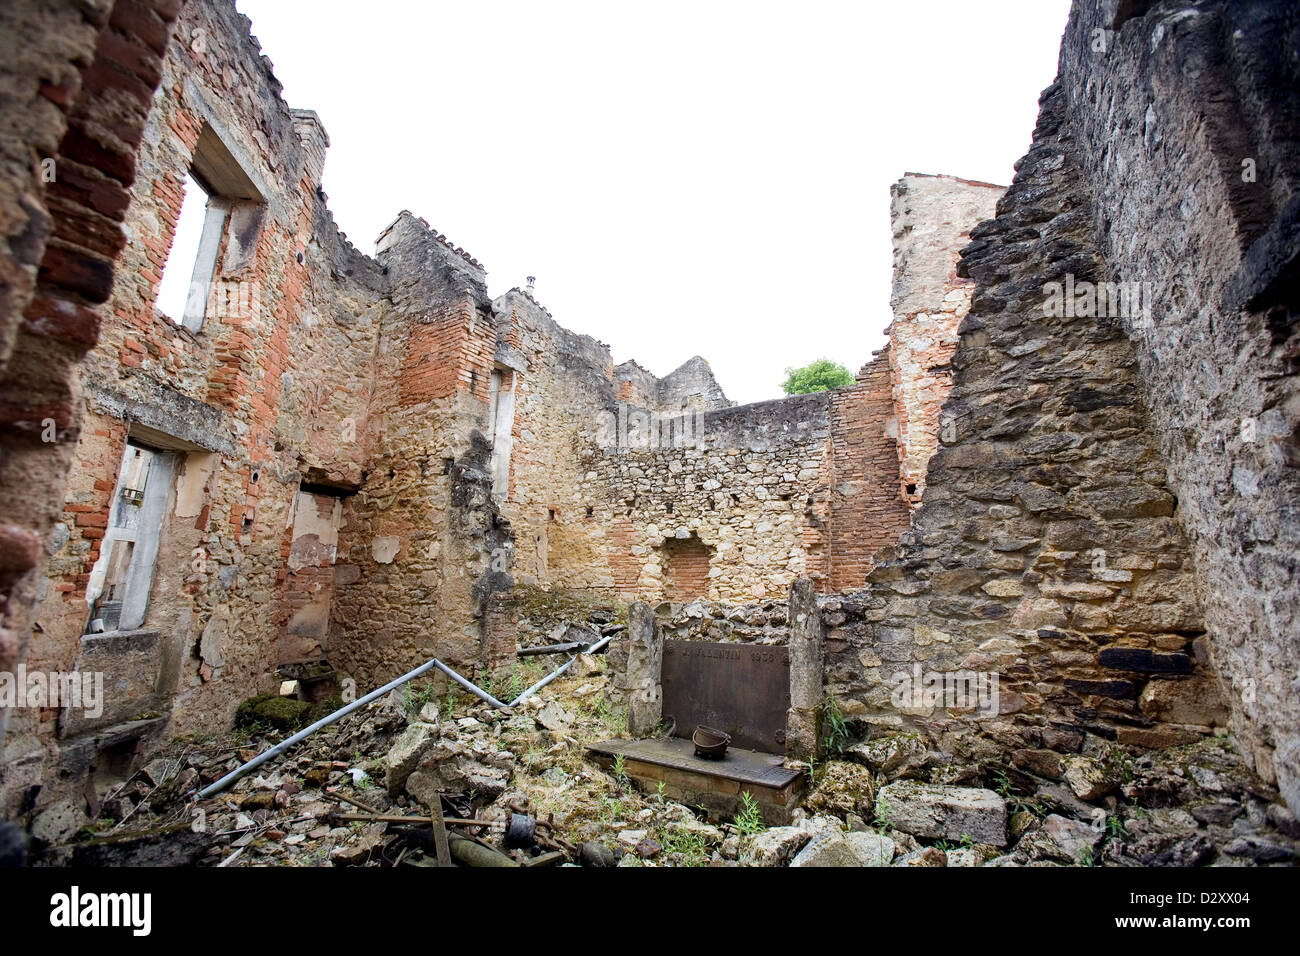 Le 10 juin 1944, la Division blindée SS Das Reich, détruit le village d'Oradour-sur-Glane. Interiors exteriors ruins Banque D'Images